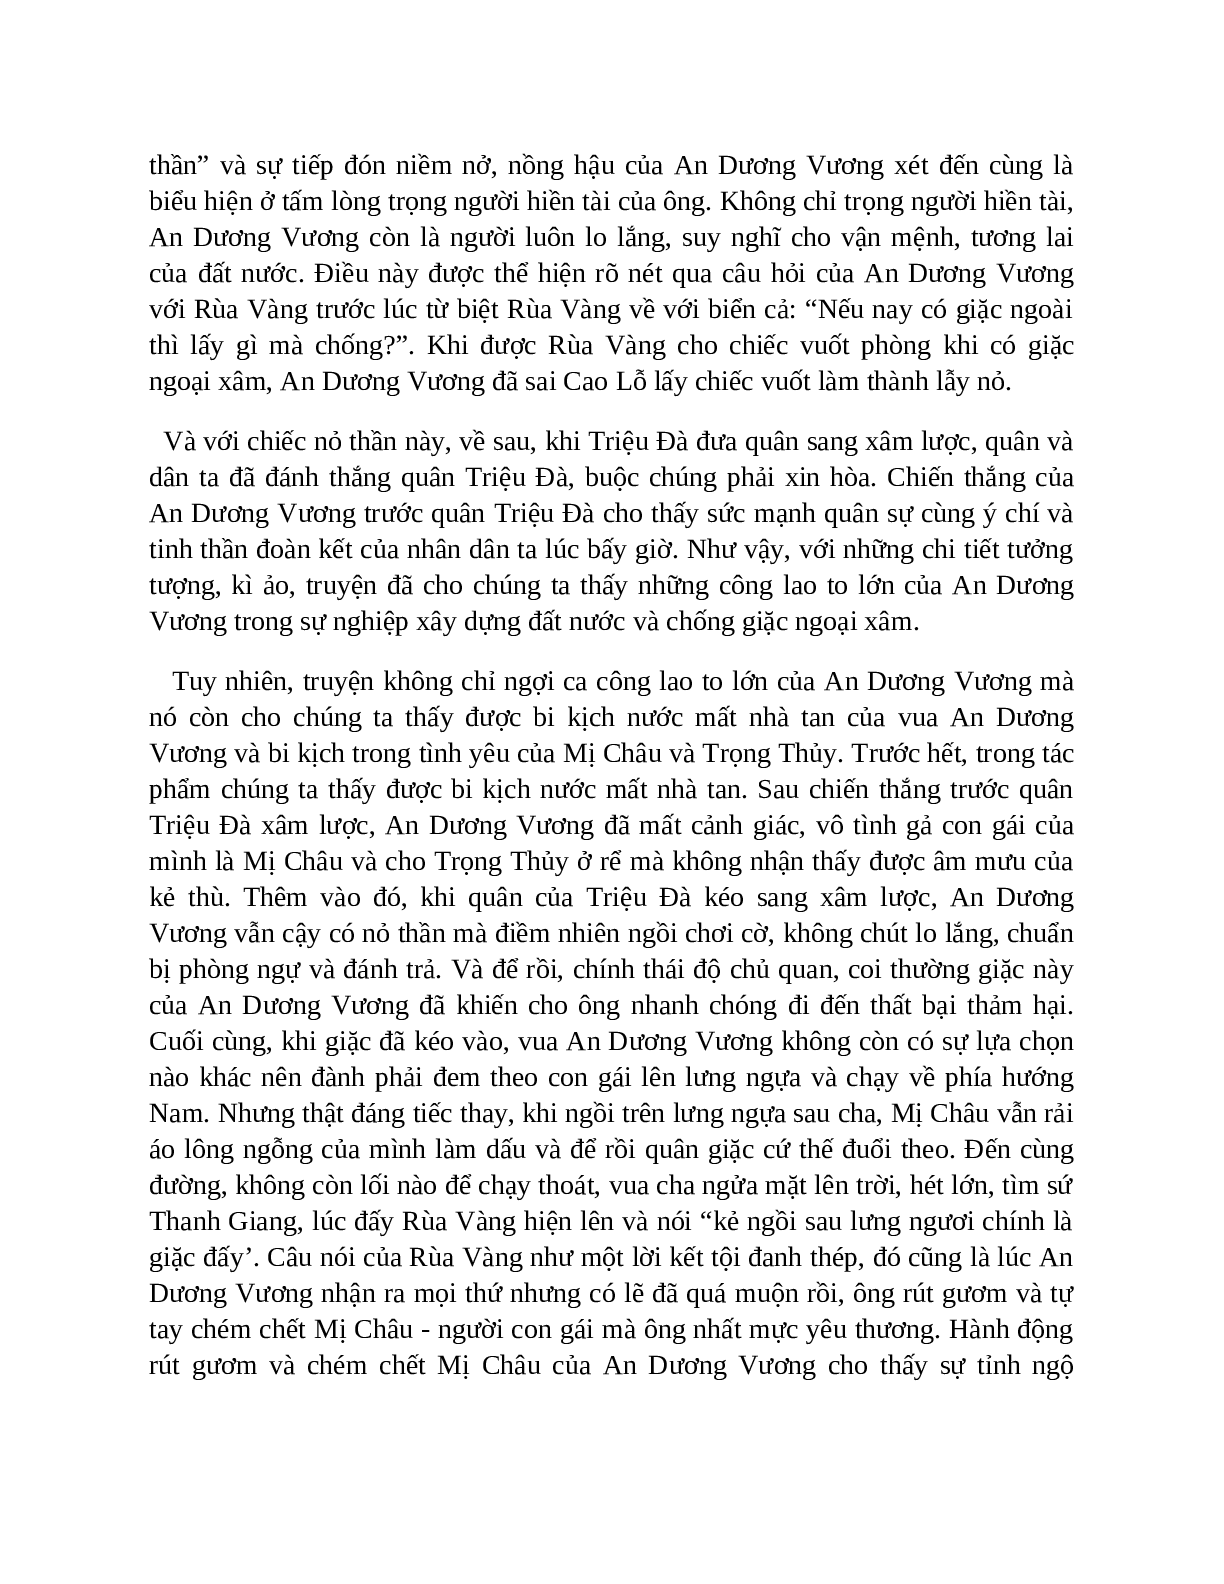 Sơ đồ tư duy bài Truyện An Dương Vương và Mị Châu – Trọng Thủy dễ nhớ, ngắn nhất - Ngữ văn lớp 10 (trang 9)